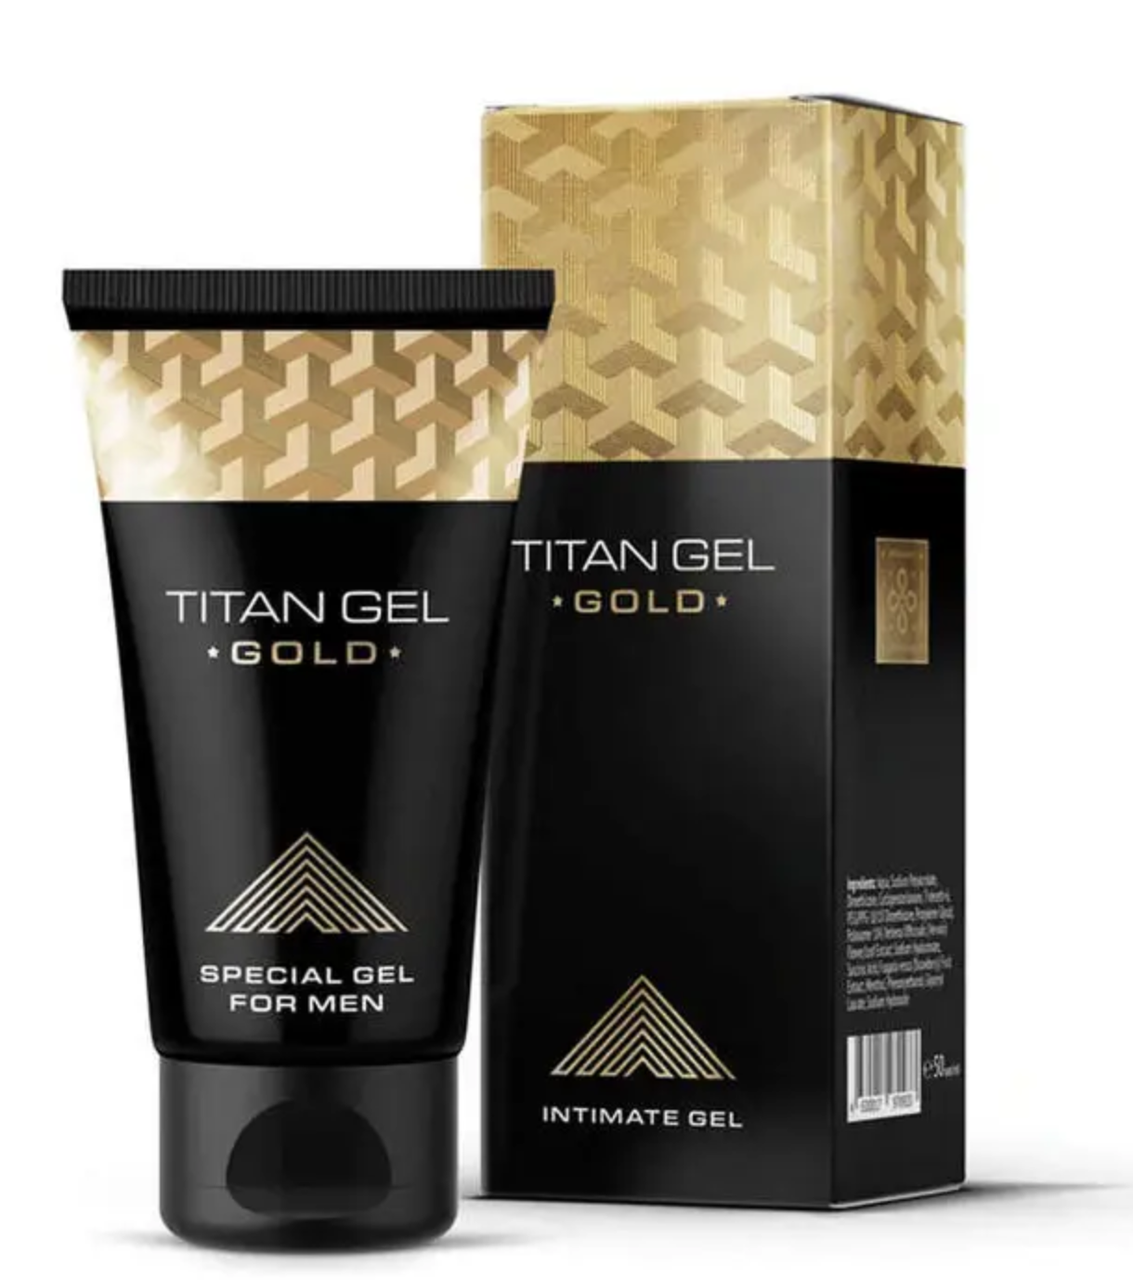 Гель для збільшення члена та покращення ерекції Titan Gel Gold (Титан гель Голд), 50 мл.